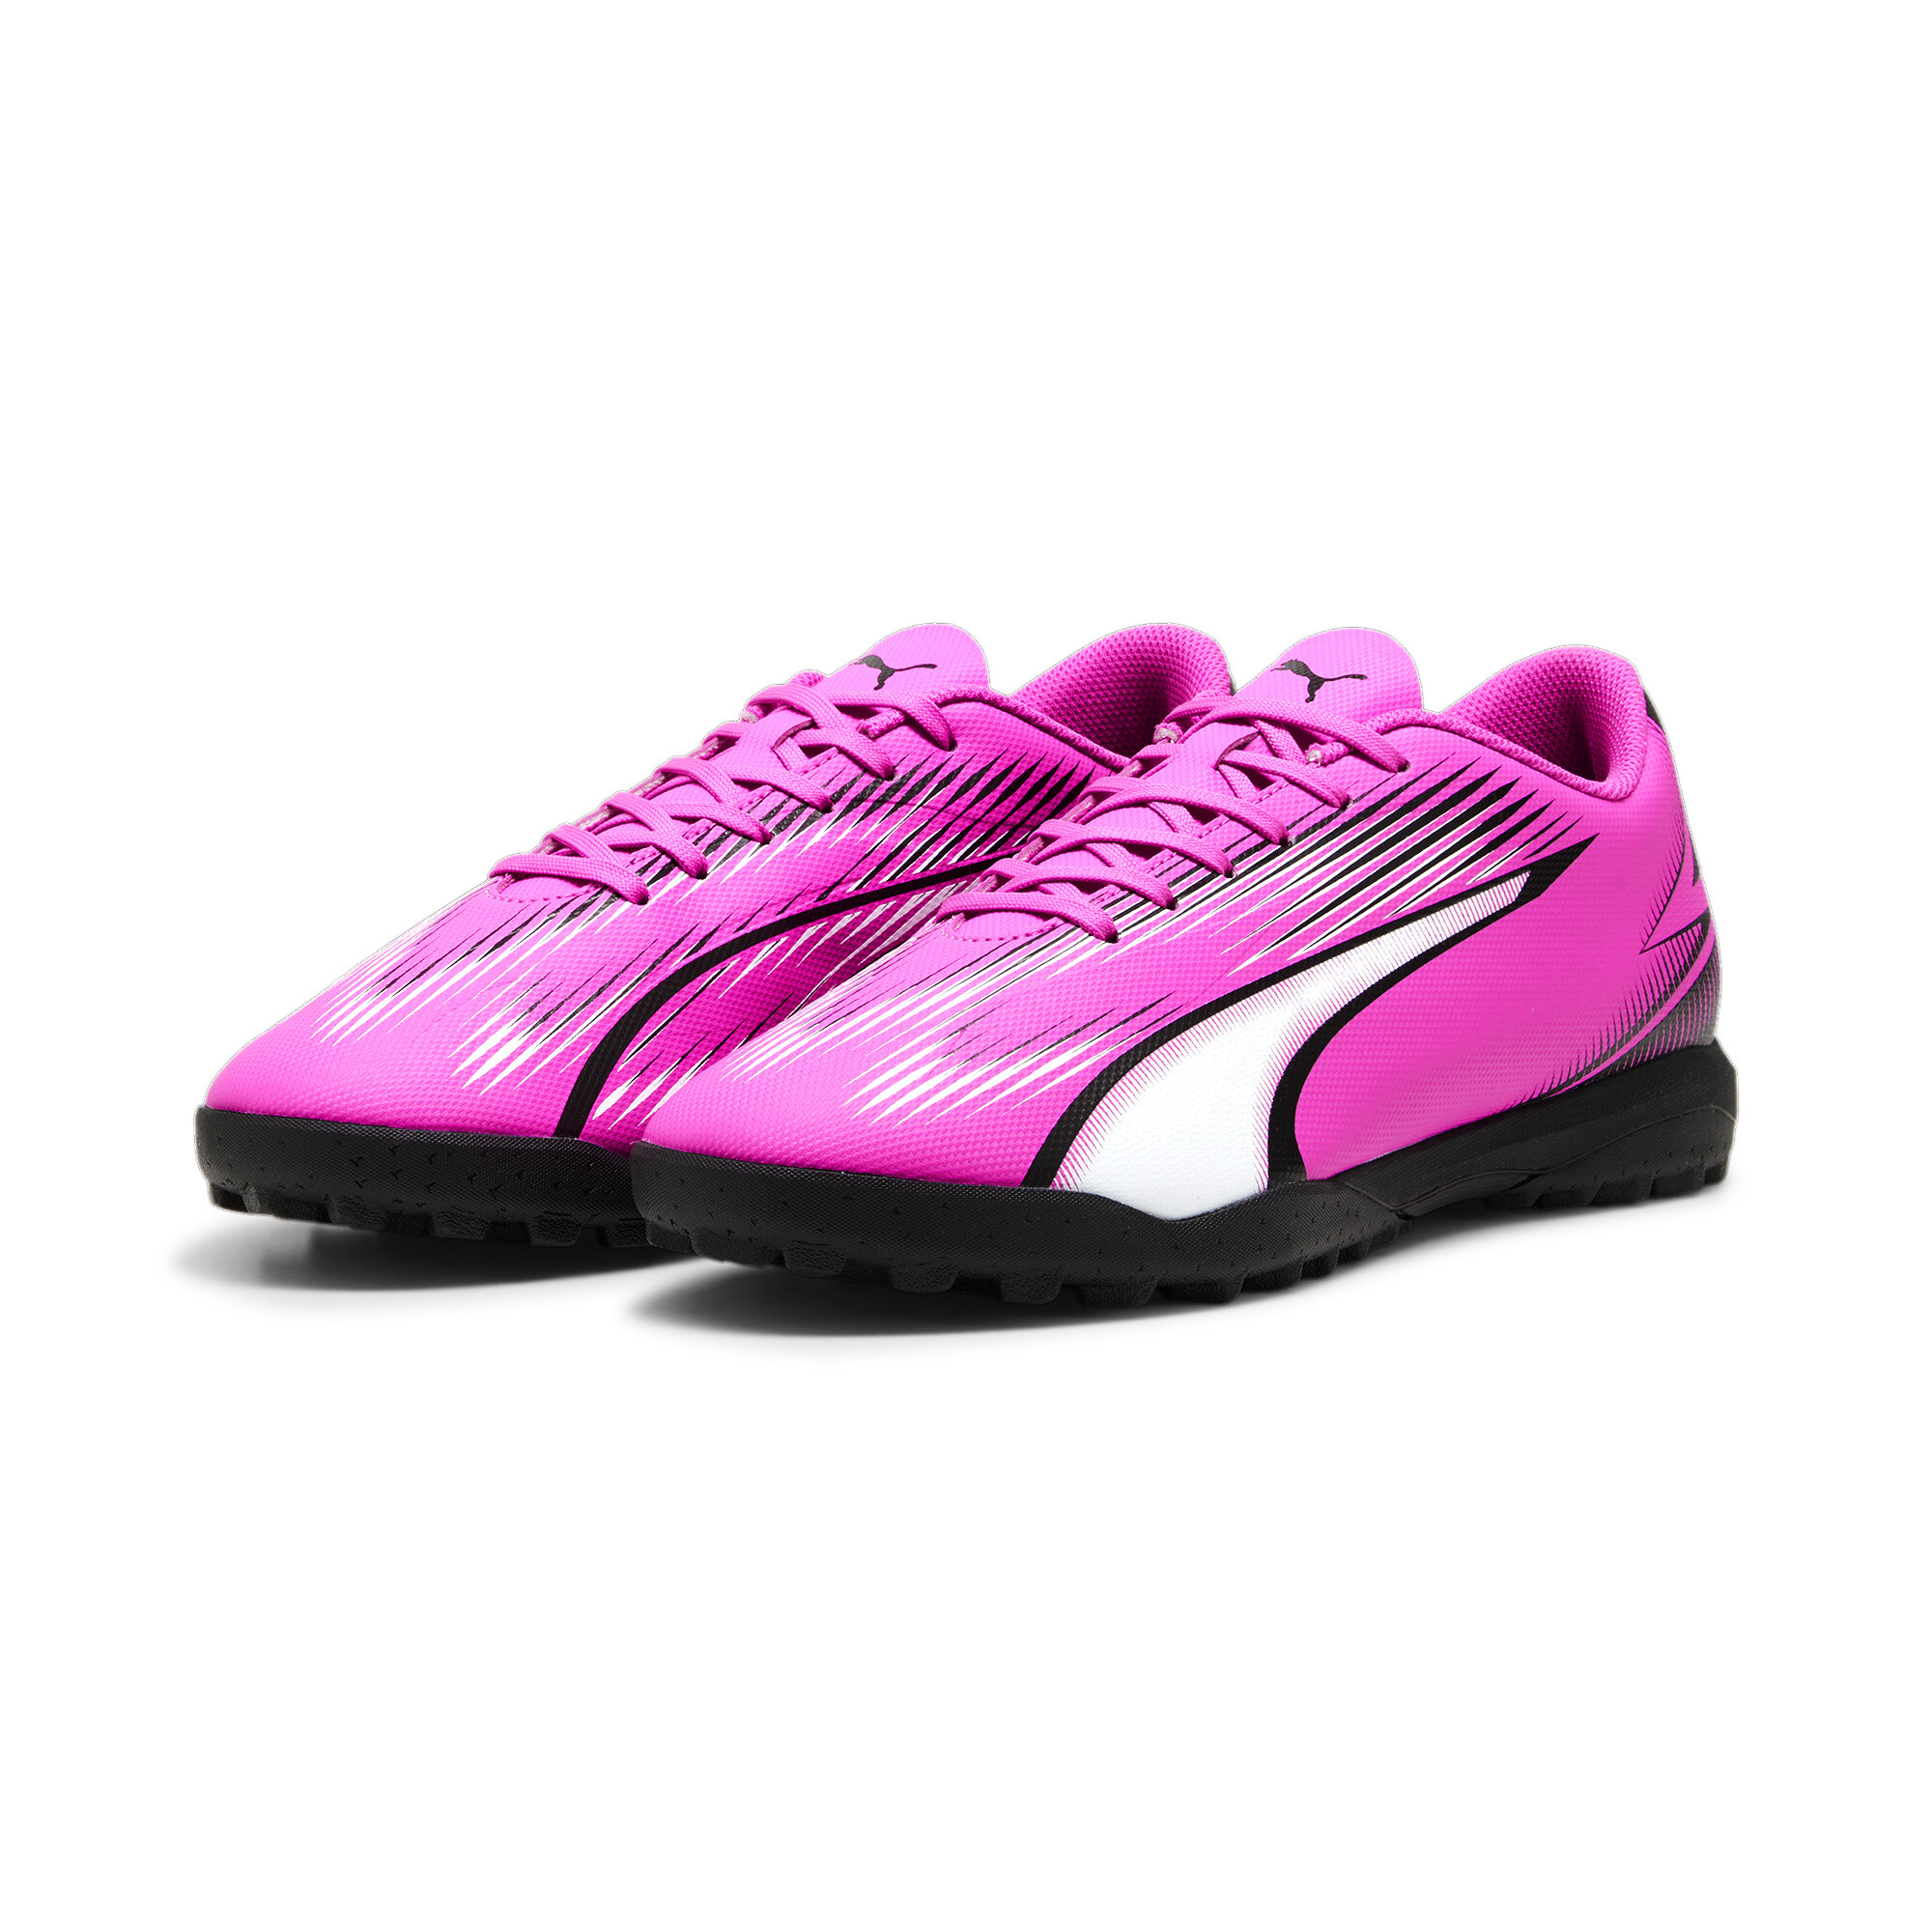 Men's PUMA ULTRA PLAY TT Football Boots In Pink, Size EU 43